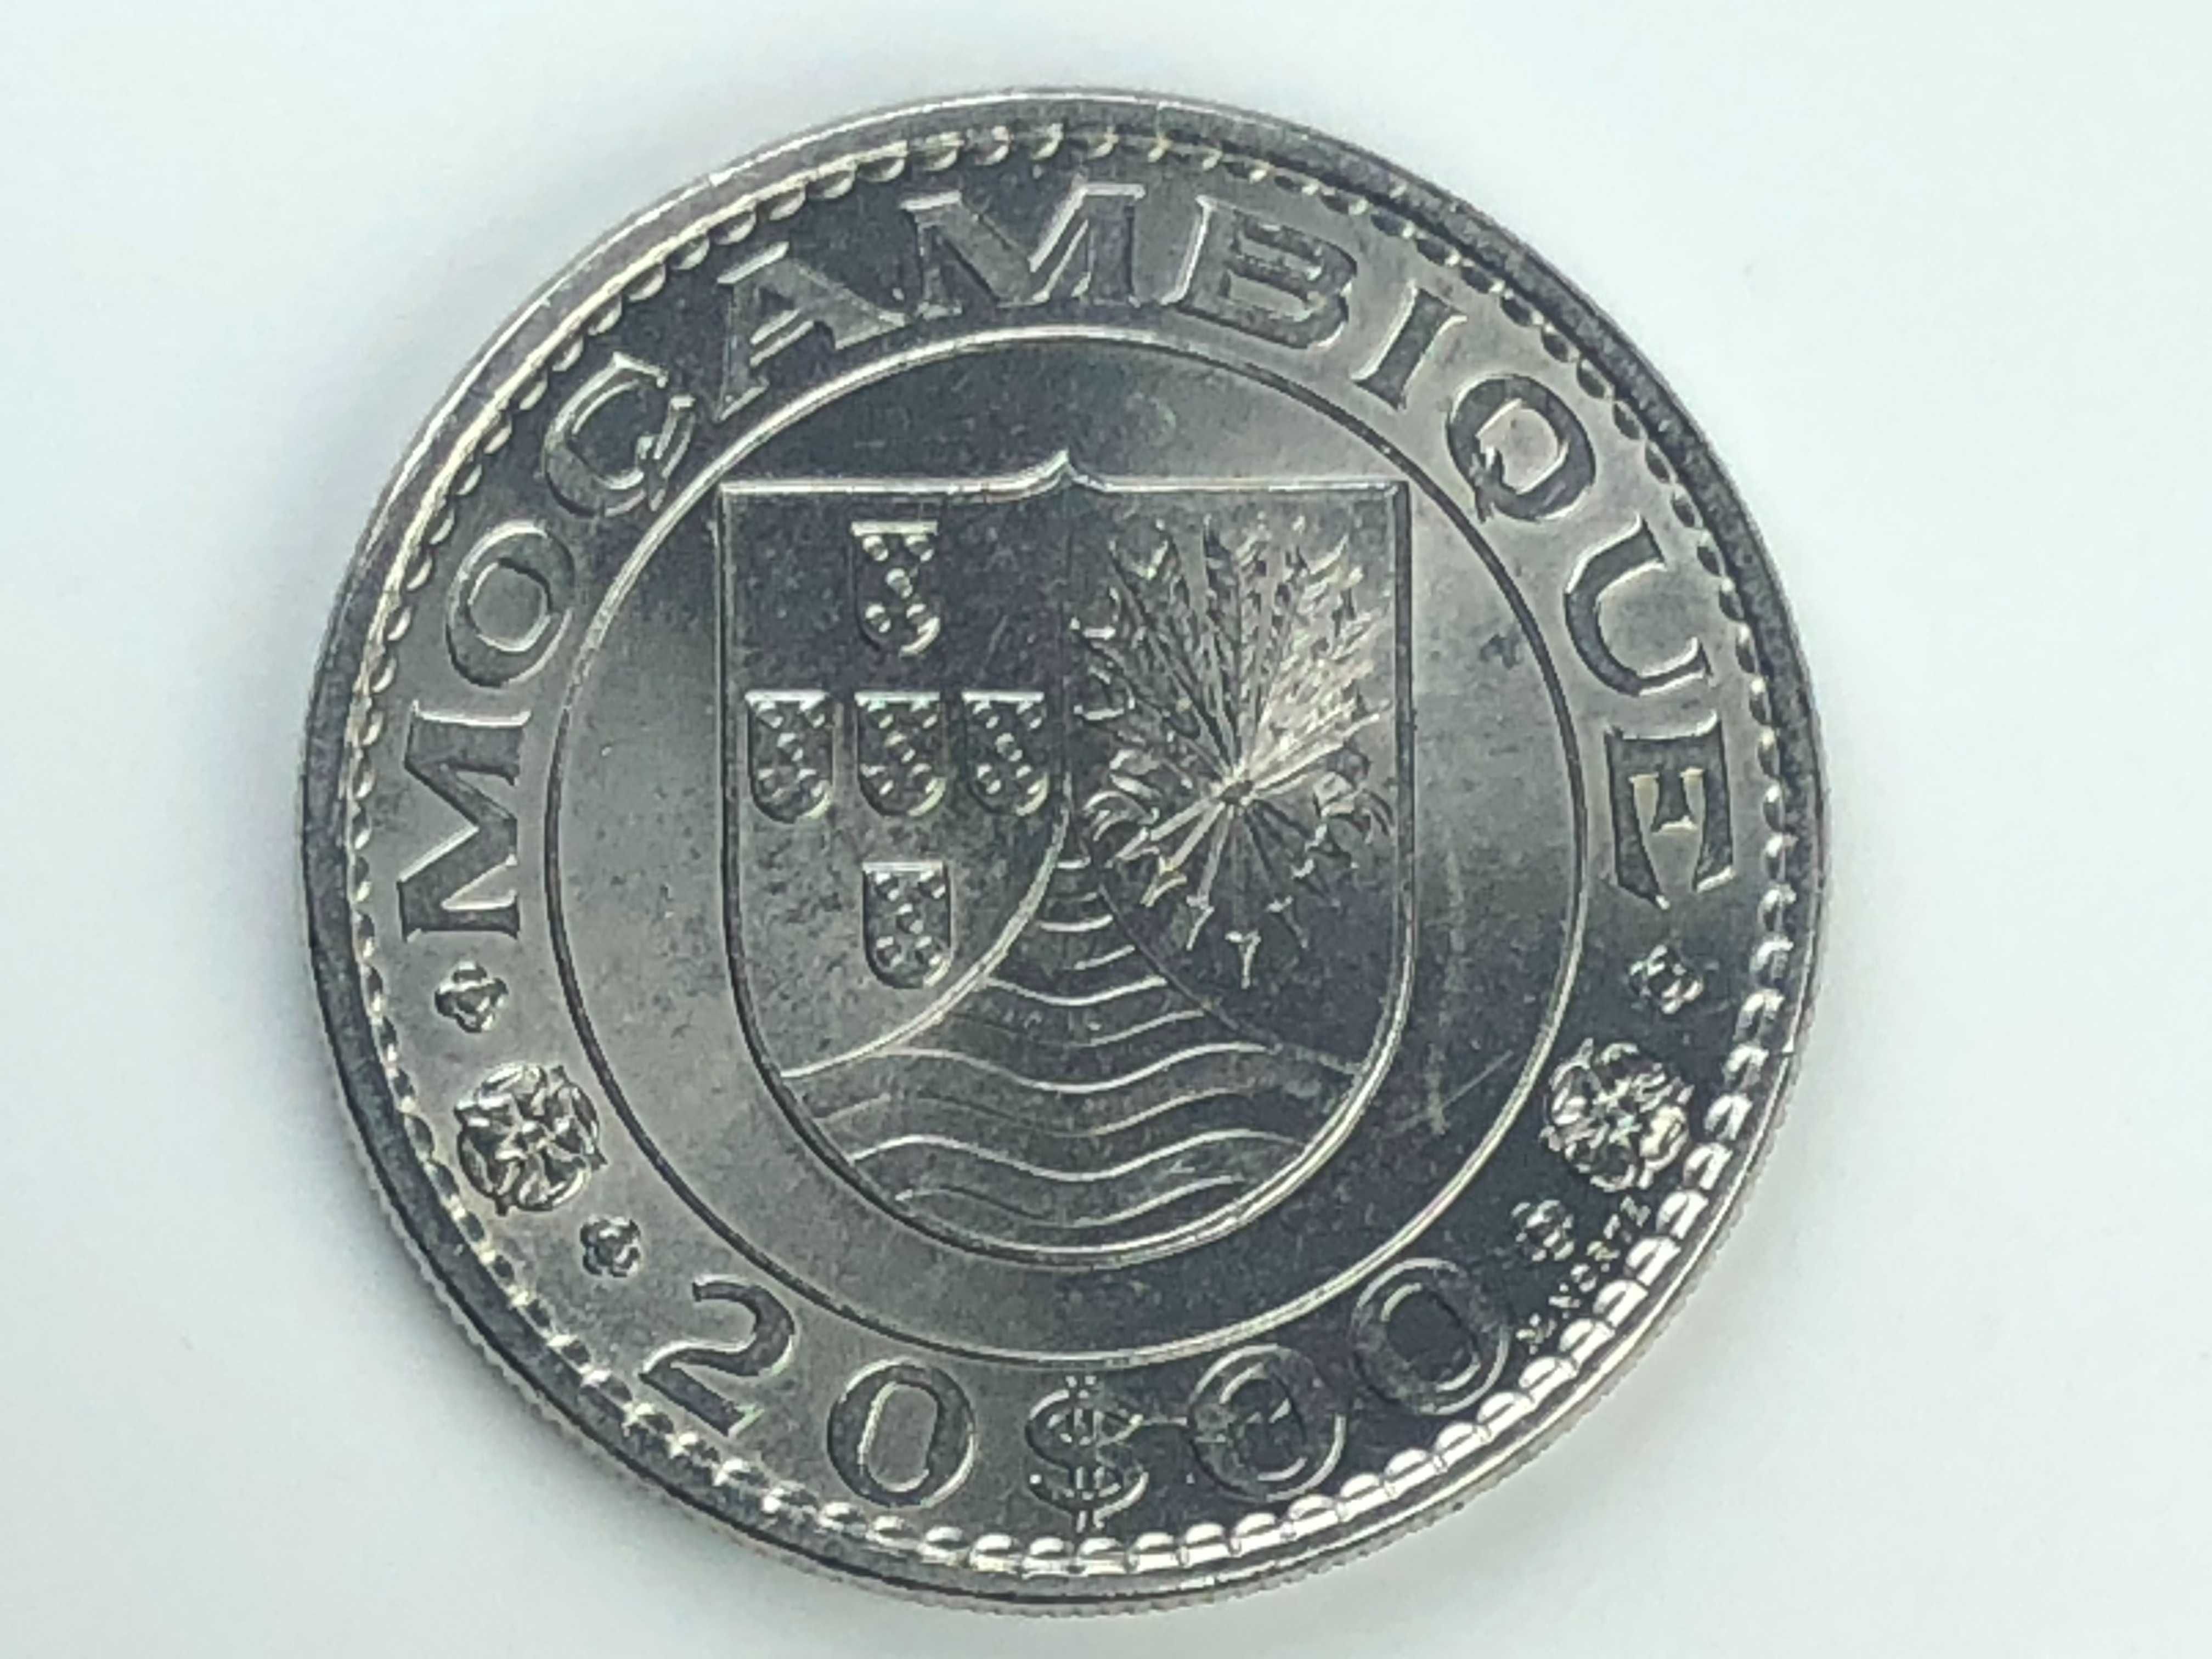 Lote de 2 moedas de Moçambique Prata 20 Escudos 1952 e 1972